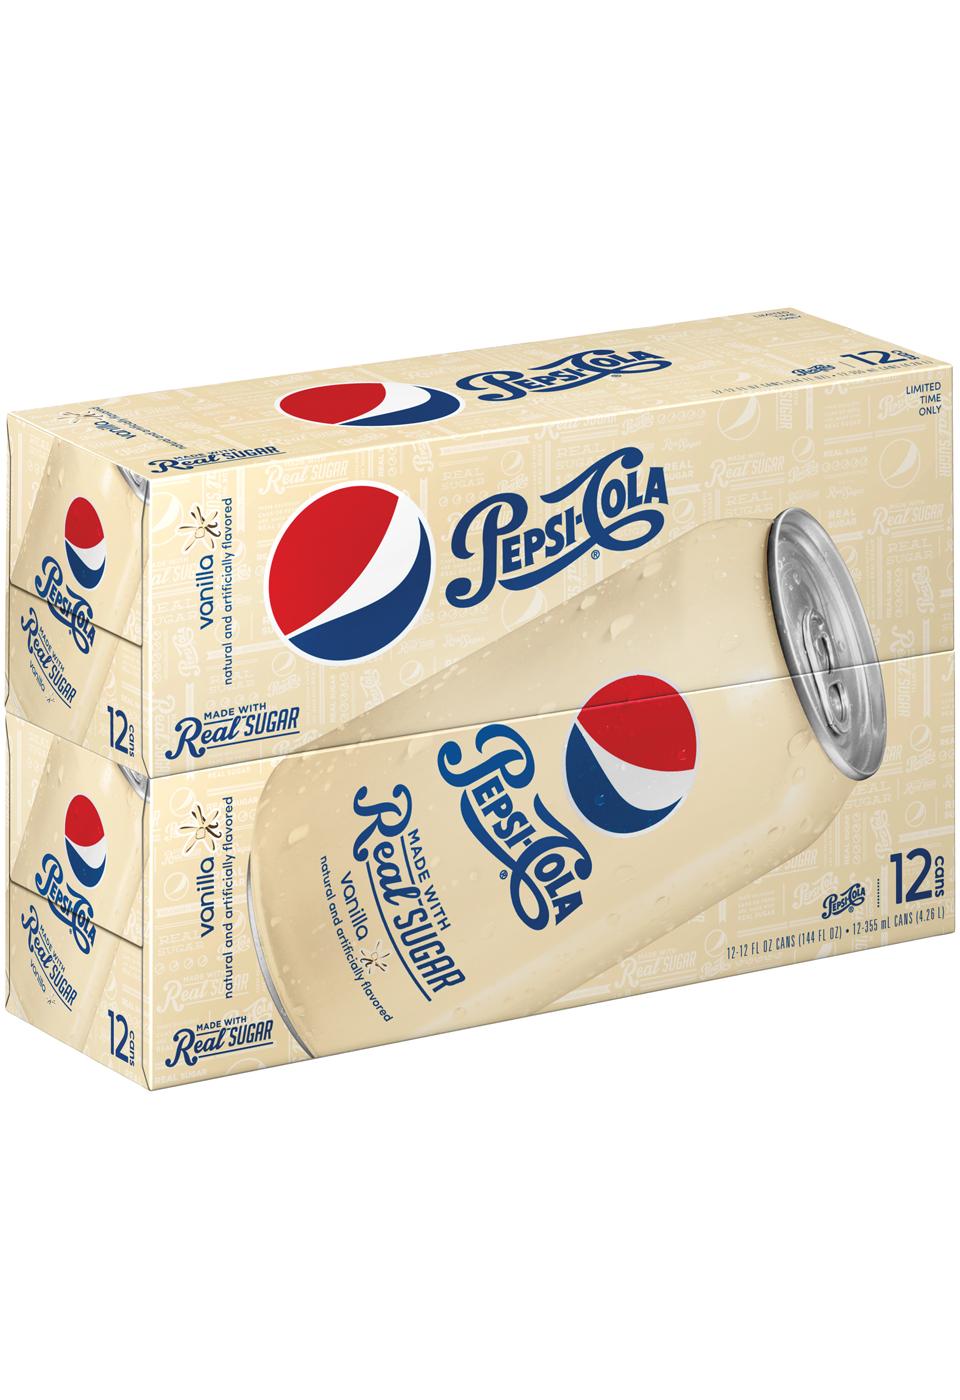 Pepsi Vanilla Real Sugar Soda, 12 OZ cans; image 1 of 2